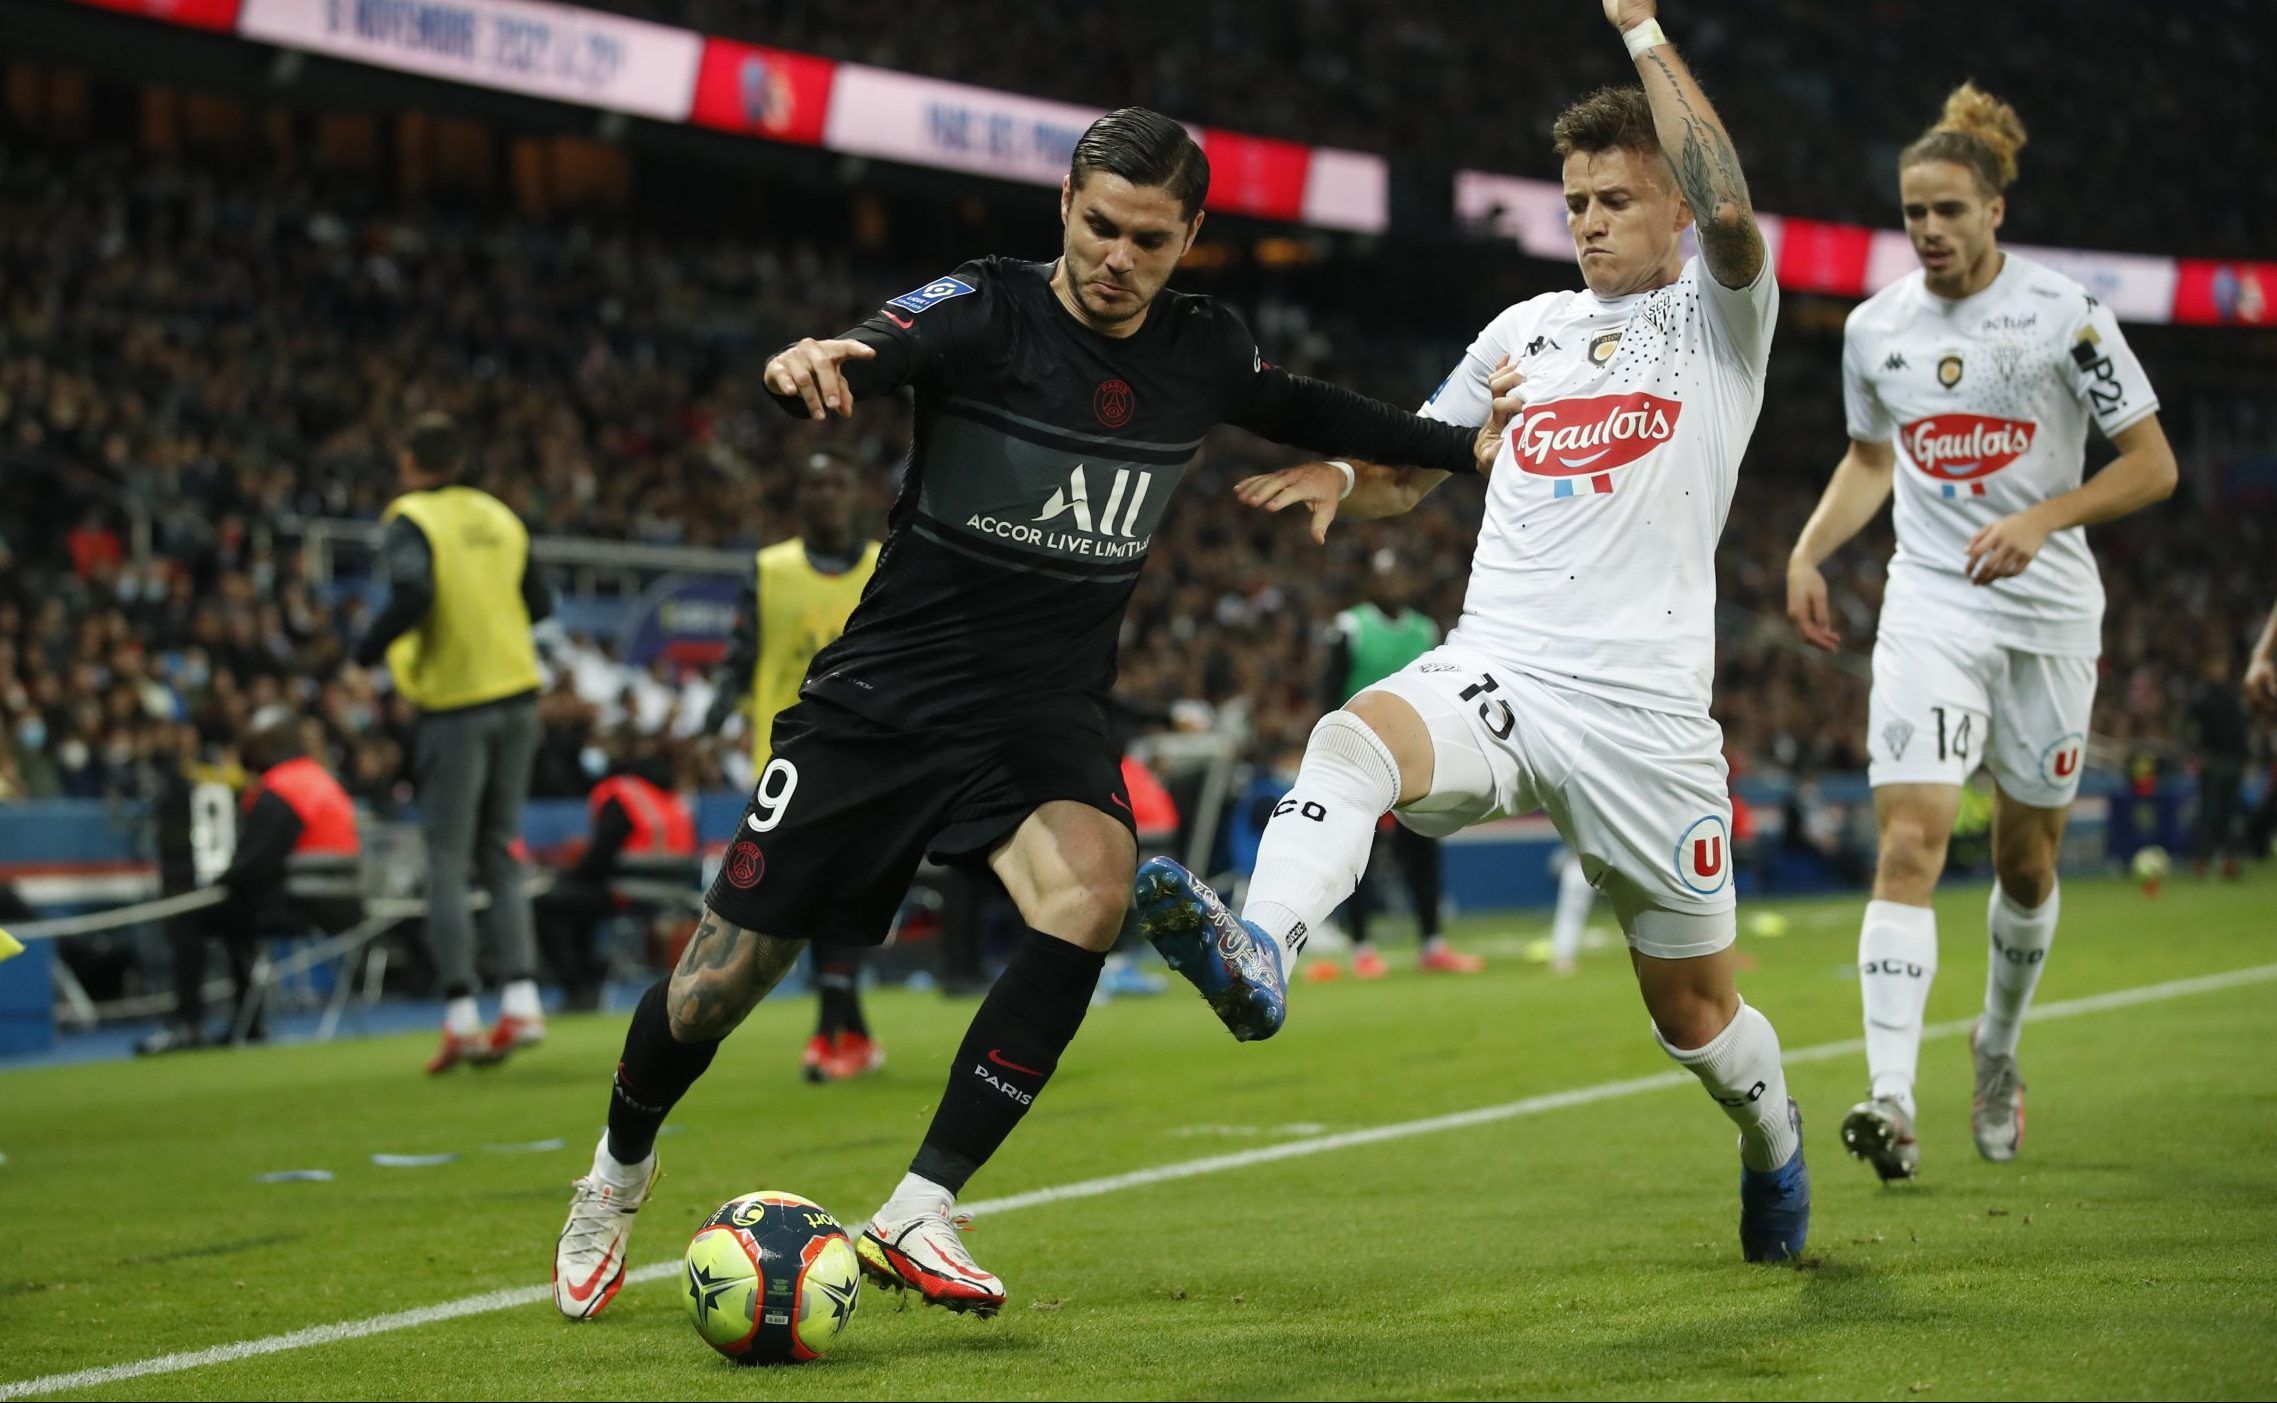 Paris Saint-Germain striker Mauro Icardi in action against Angers SCO in Ligue 1